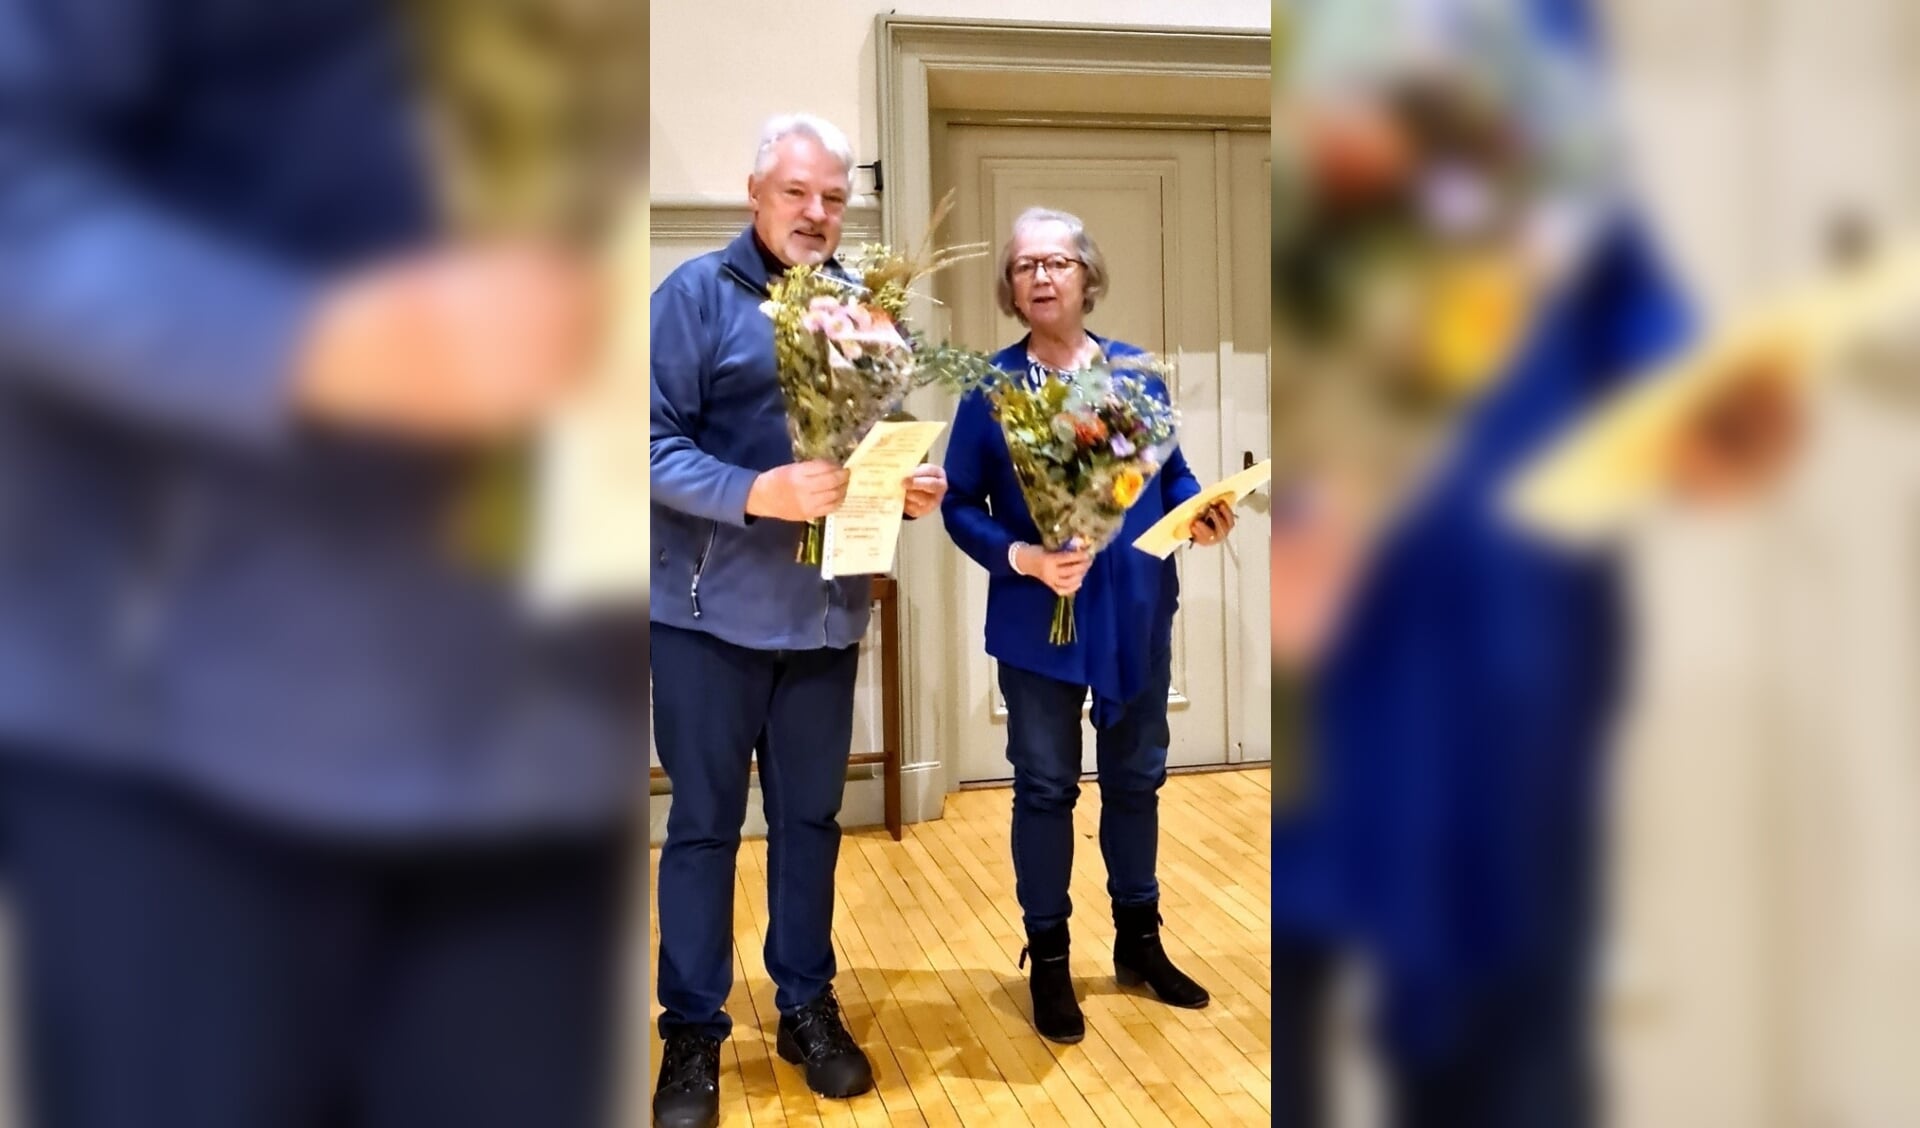 Ceets van Grieken – van der Meij en Hans Roest hebben de erepenning van Warmelda gekregen bij hun afscheid. 